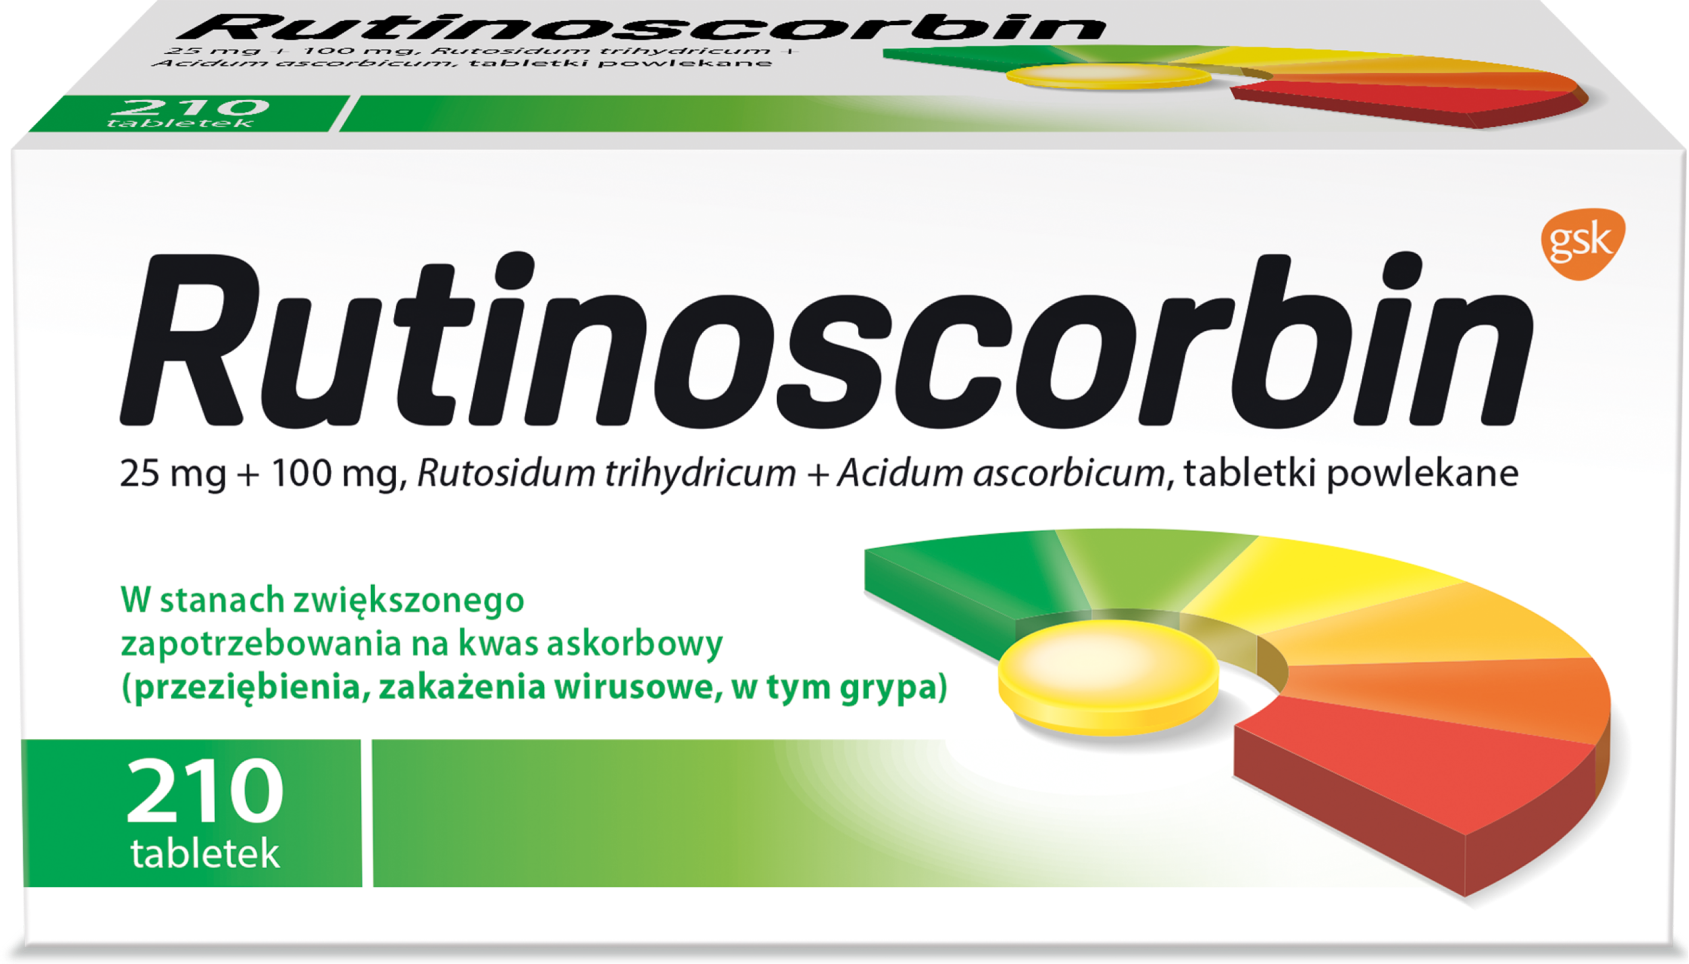 Rutinoscorbin 210 Tablets